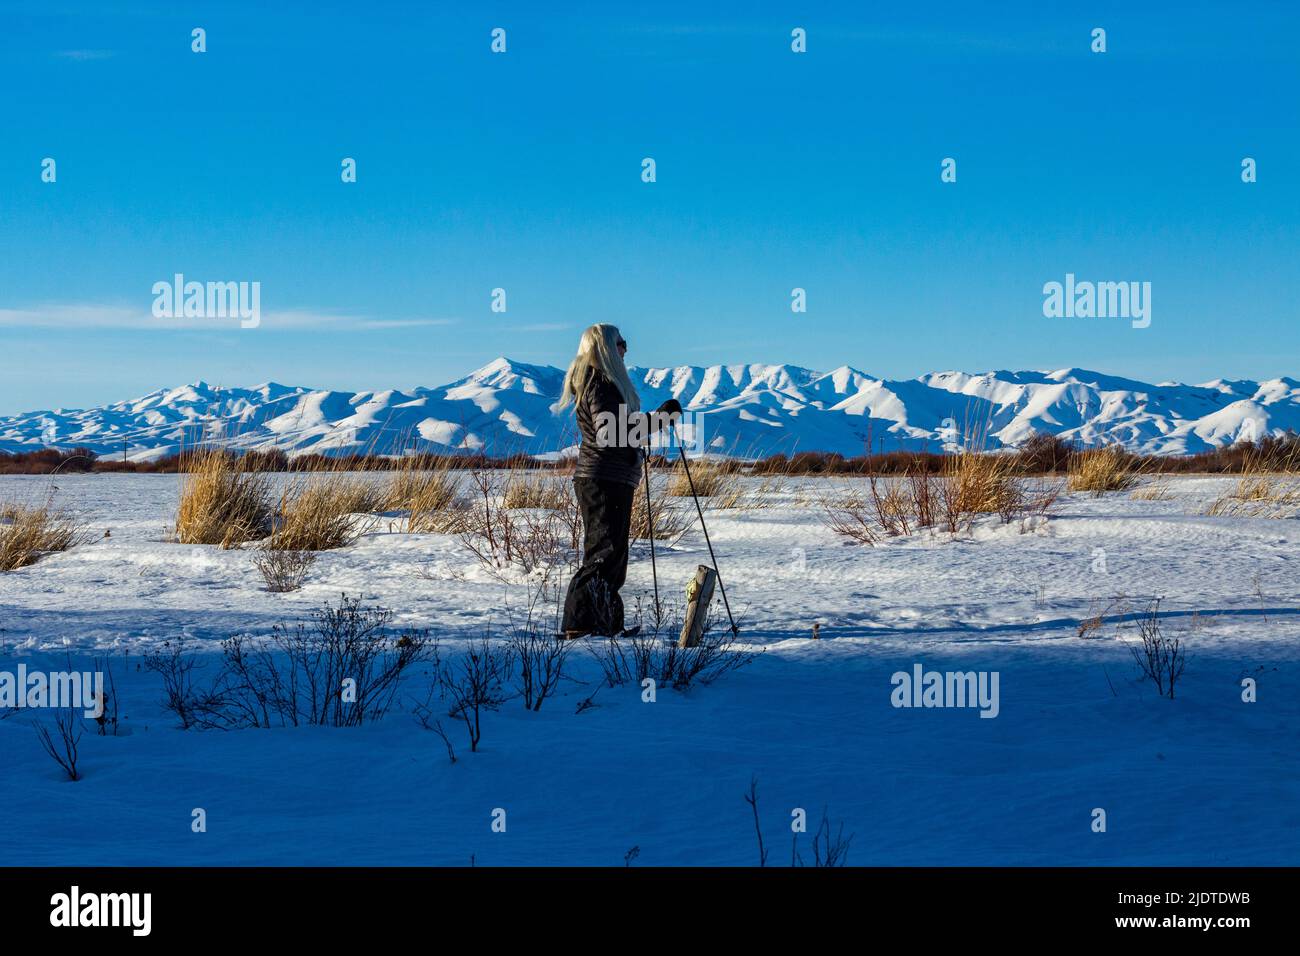 Etats-Unis, Idaho, Bellevue, femme blonde senior raquette dans un paysage enneigé Banque D'Images